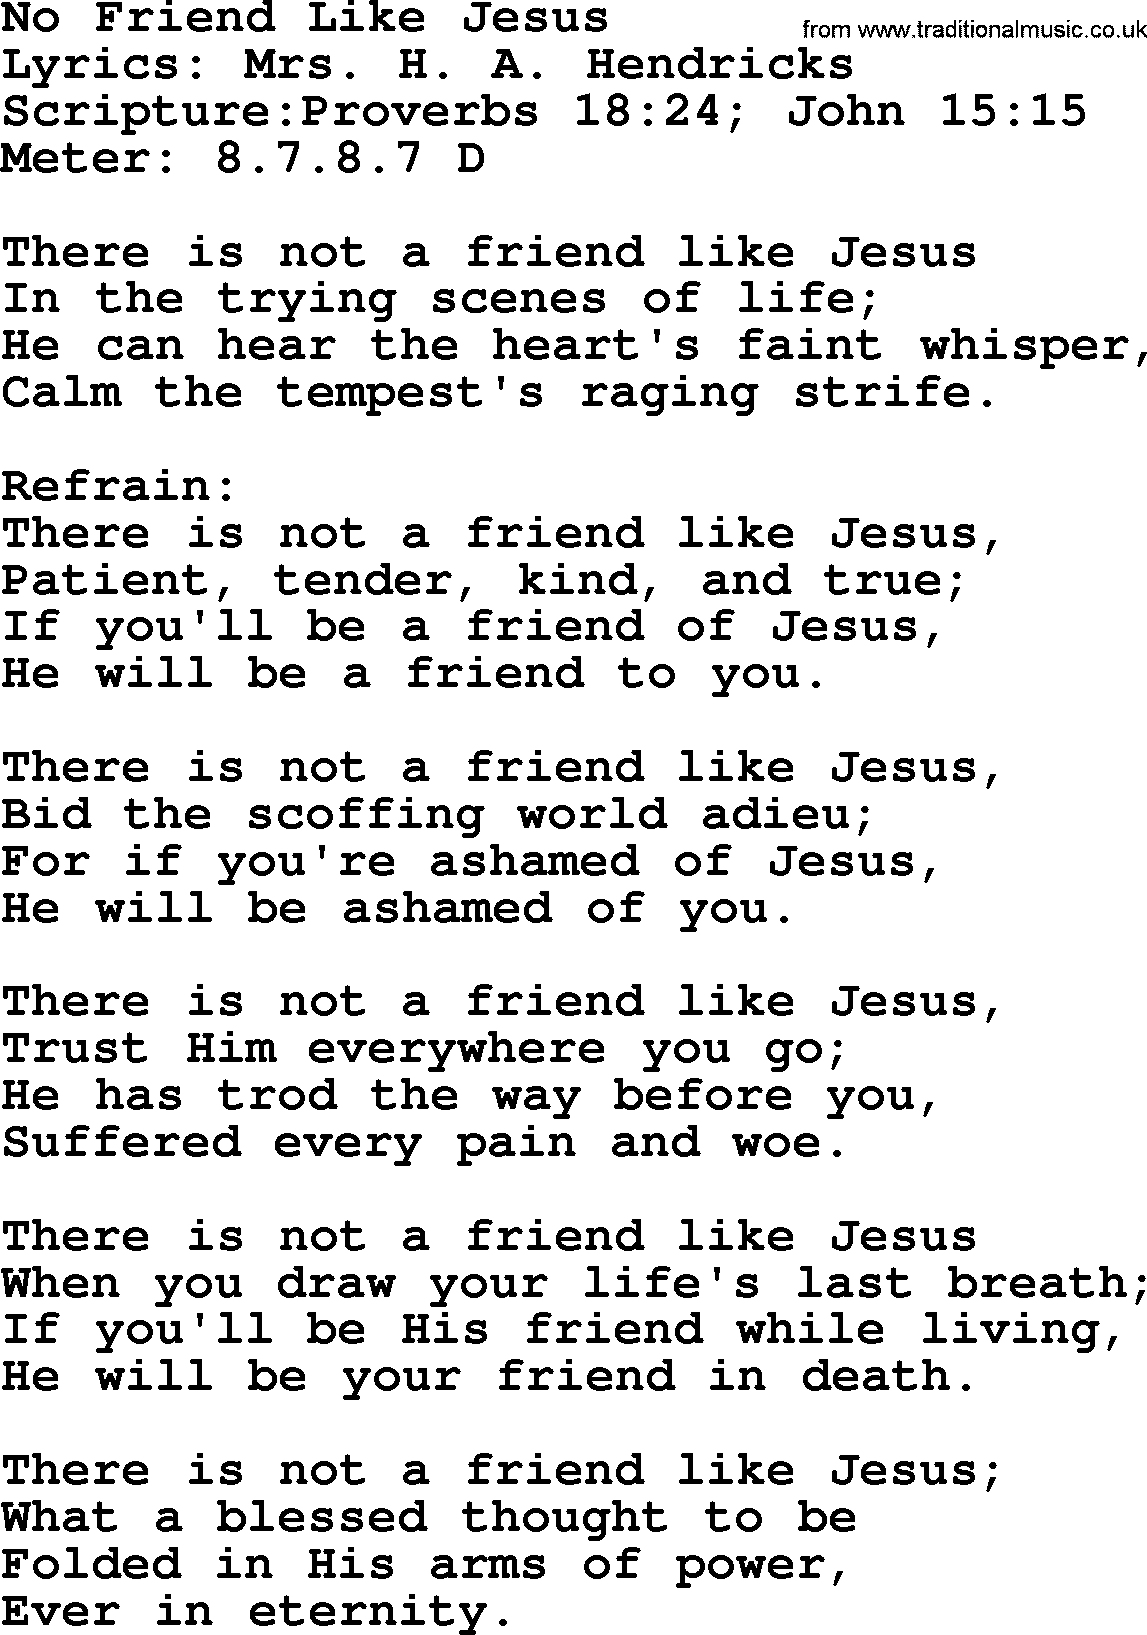 Hymns about  Angels, Hymn: No Friend Like Jesus, lyrics, sheet music, midi & Mp3 music with PDF